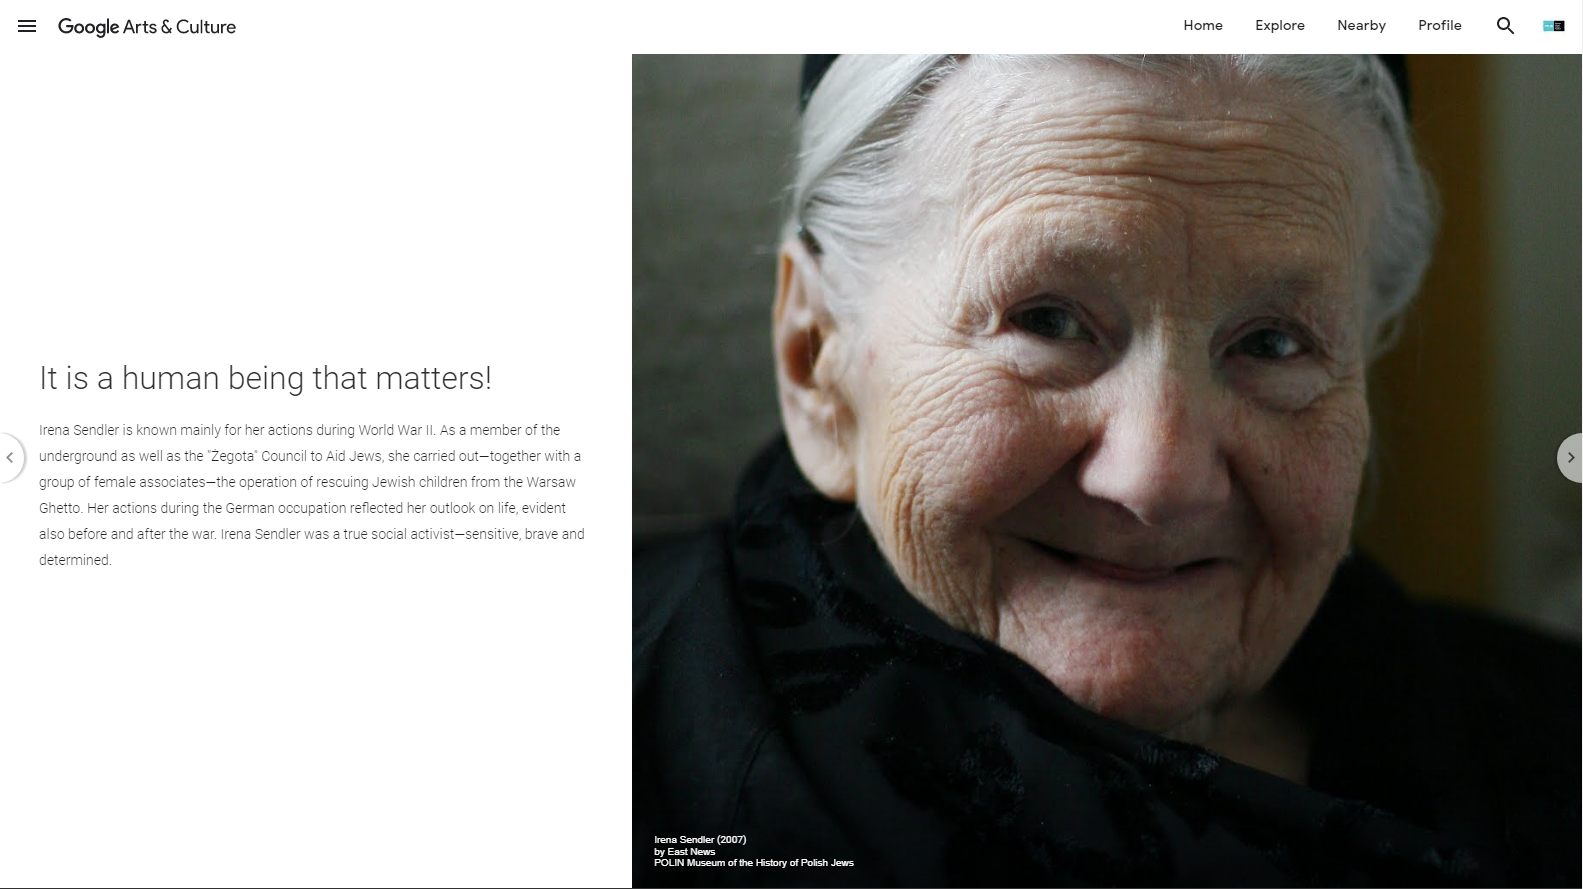 Zdjęcie starszej siwowłosej kobiety - Irena Sendler